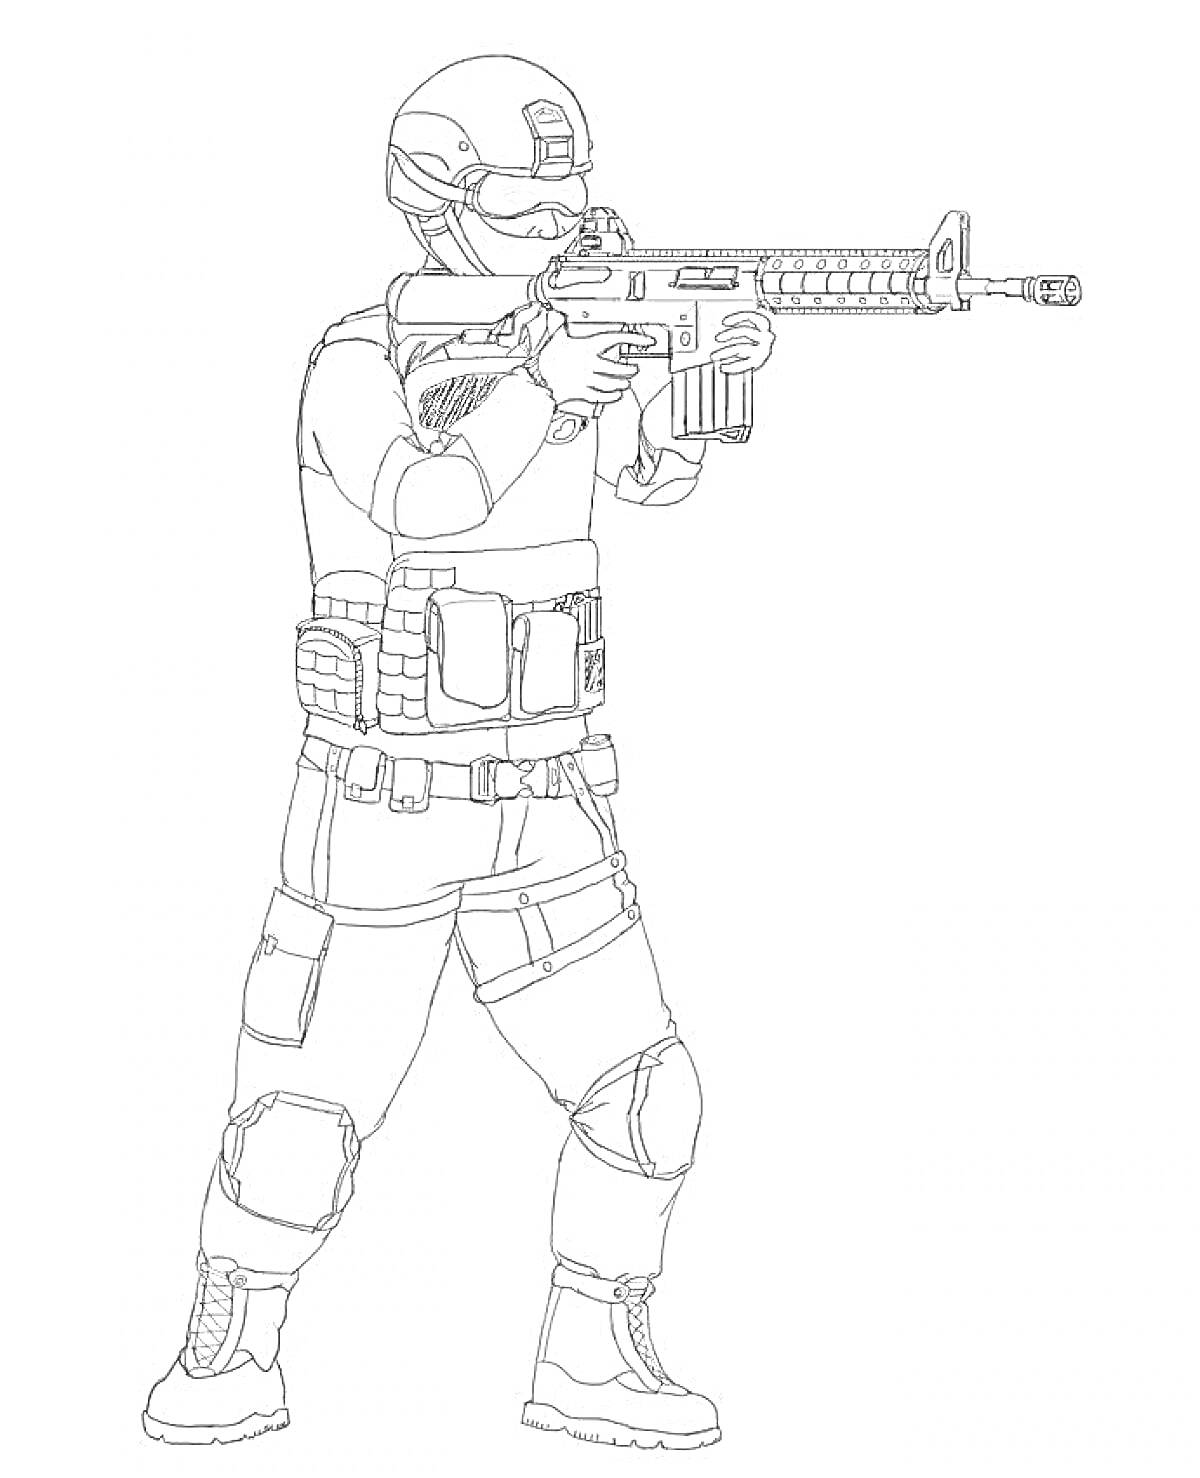 Раскраска Солдат в полной боевой экипировке, шлем с очками, тактический жилет, брюки с наколенниками, ботинки, автоматическая винтовка